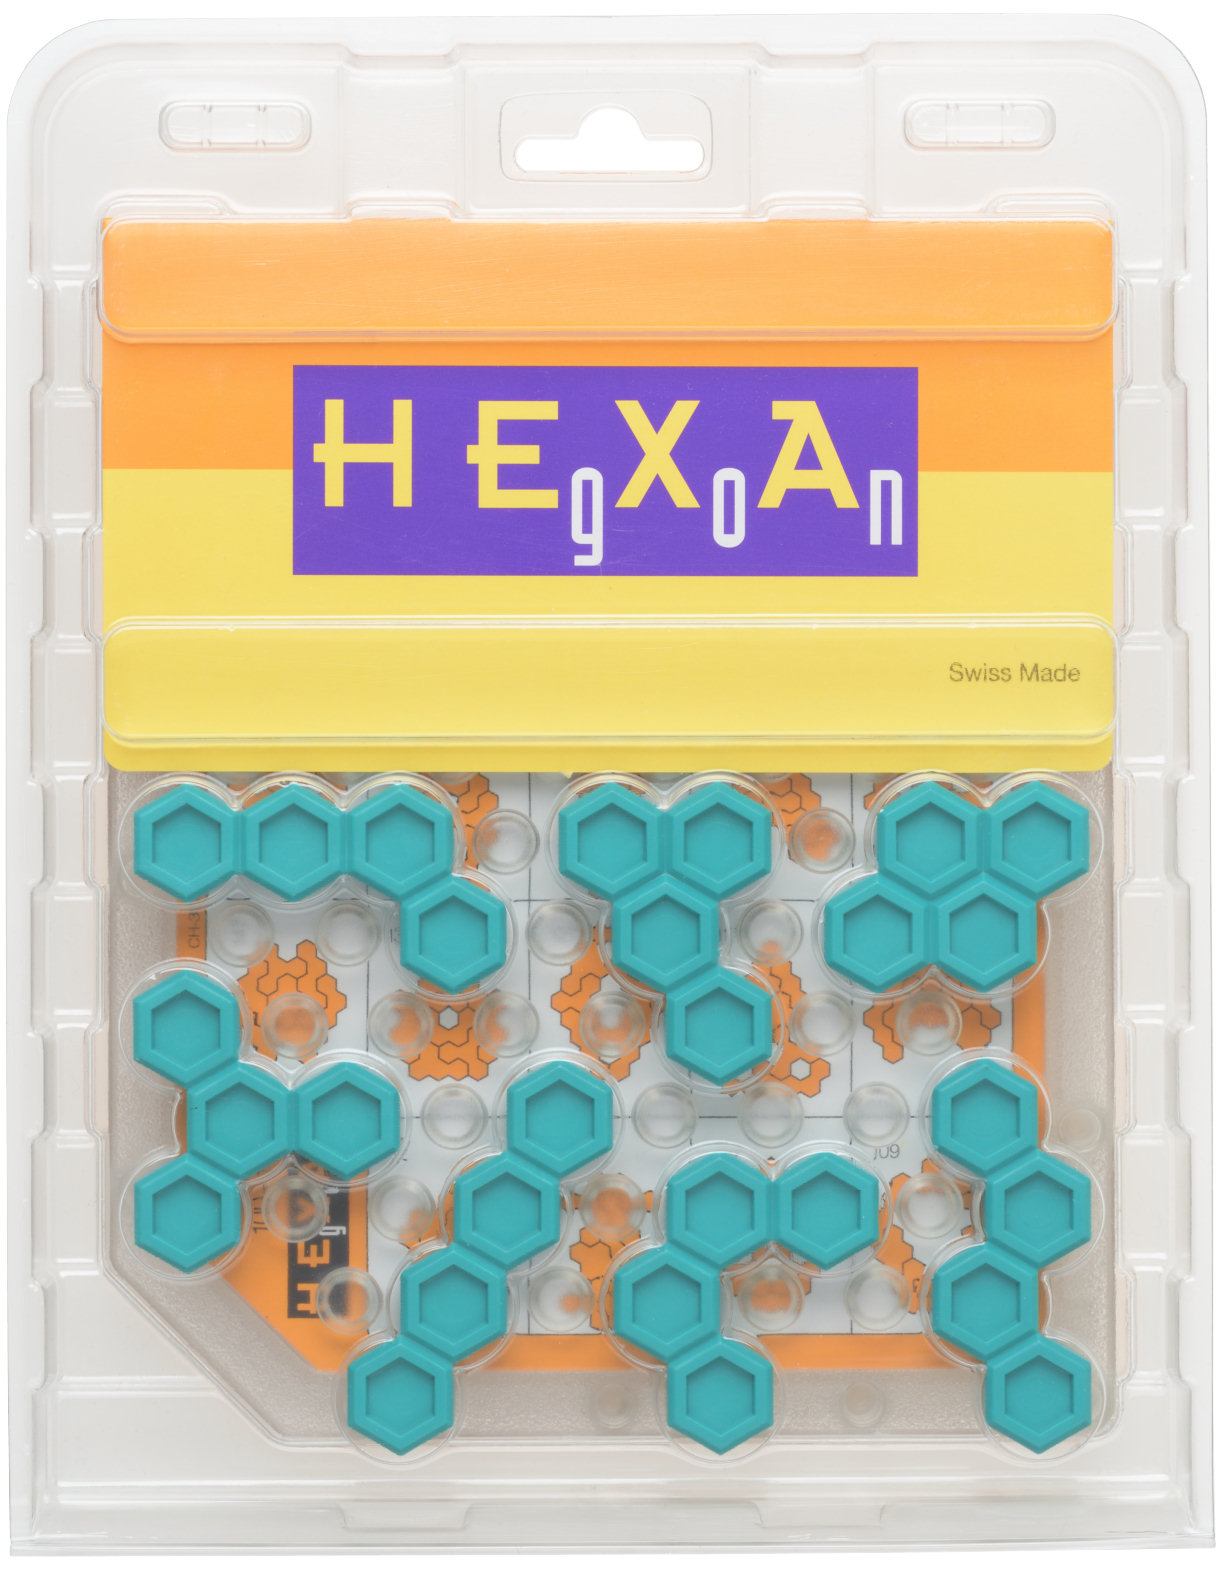 Hexagon mit Spielbrett